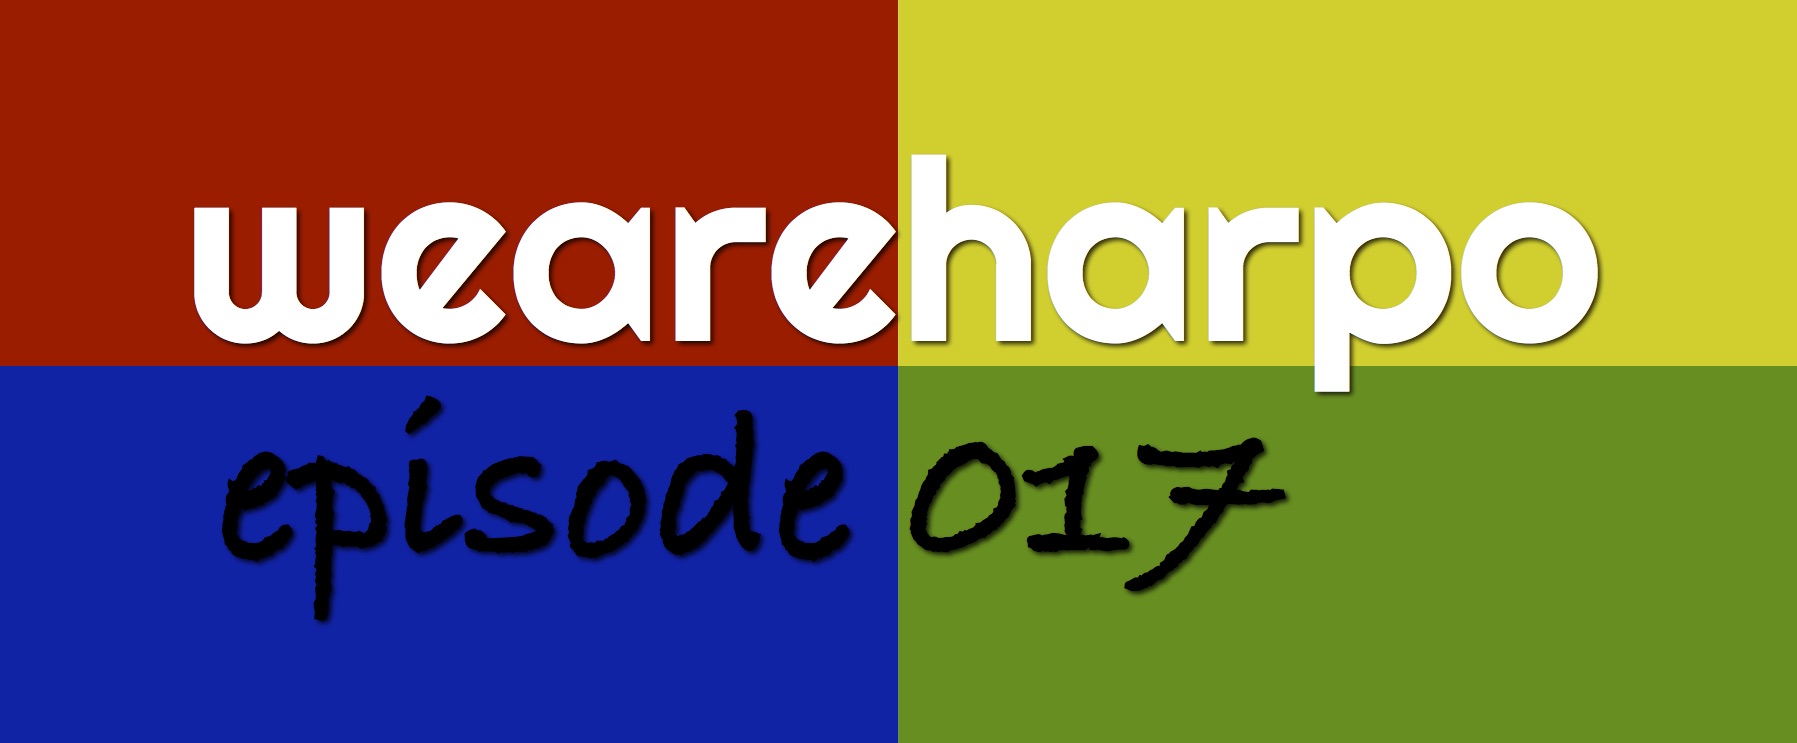 Episode 017 Logo